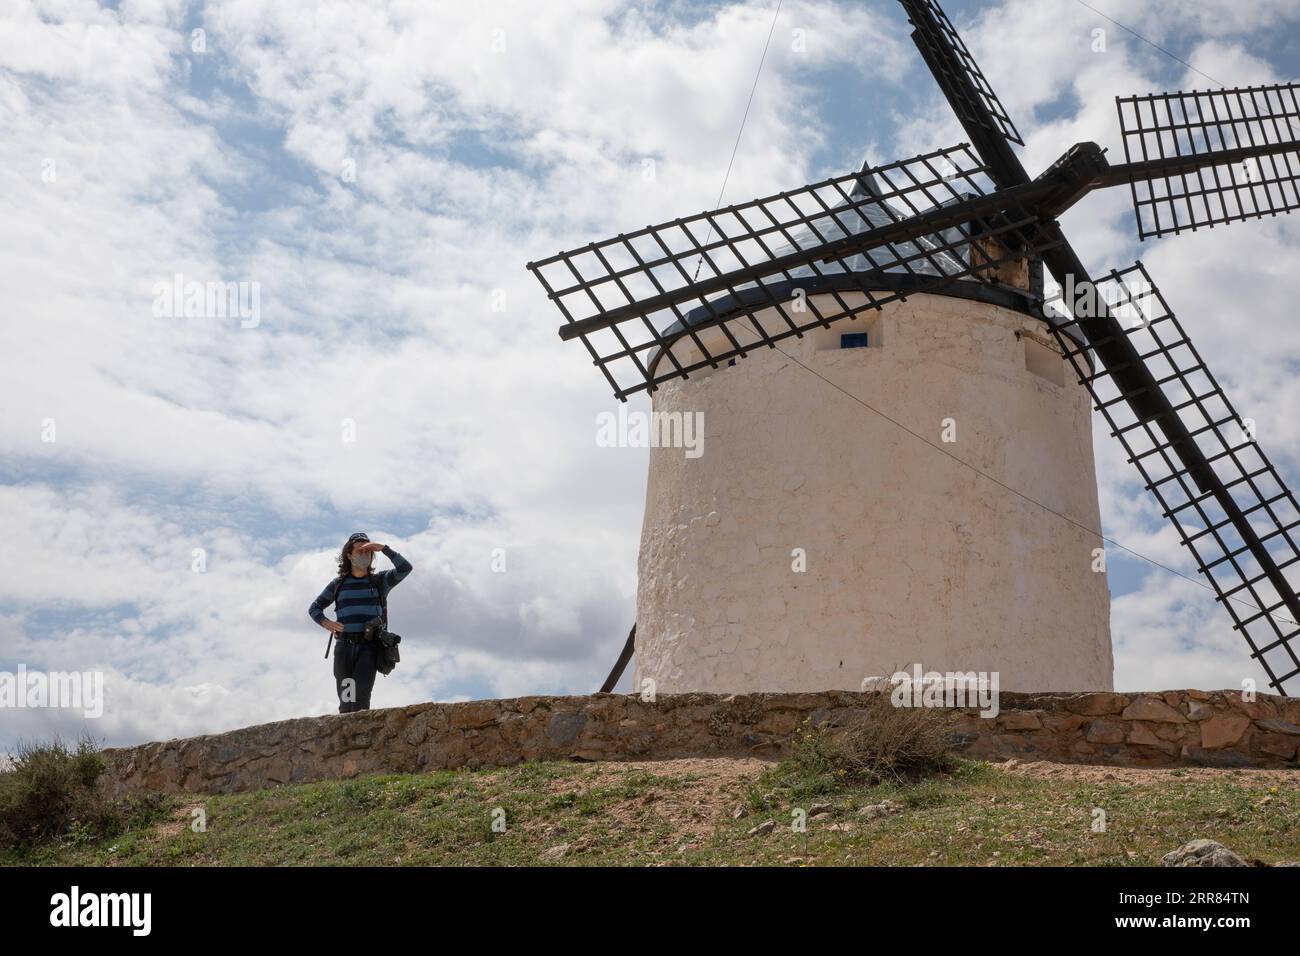 210417 -- CONSUEGRA, le 17 avril 2021 -- un homme voit les moulins à vent de Consuegra, en Espagne, sur Apirl 17, 2021. Le moulin à vent est l'un des paysages représentatifs de la région de Castille-la Manche en Espagne. ESPAGNE-CONSUEGRA-MOULIN MengxDingbo PUBLICATIONxNOTxINxCHN Banque D'Images